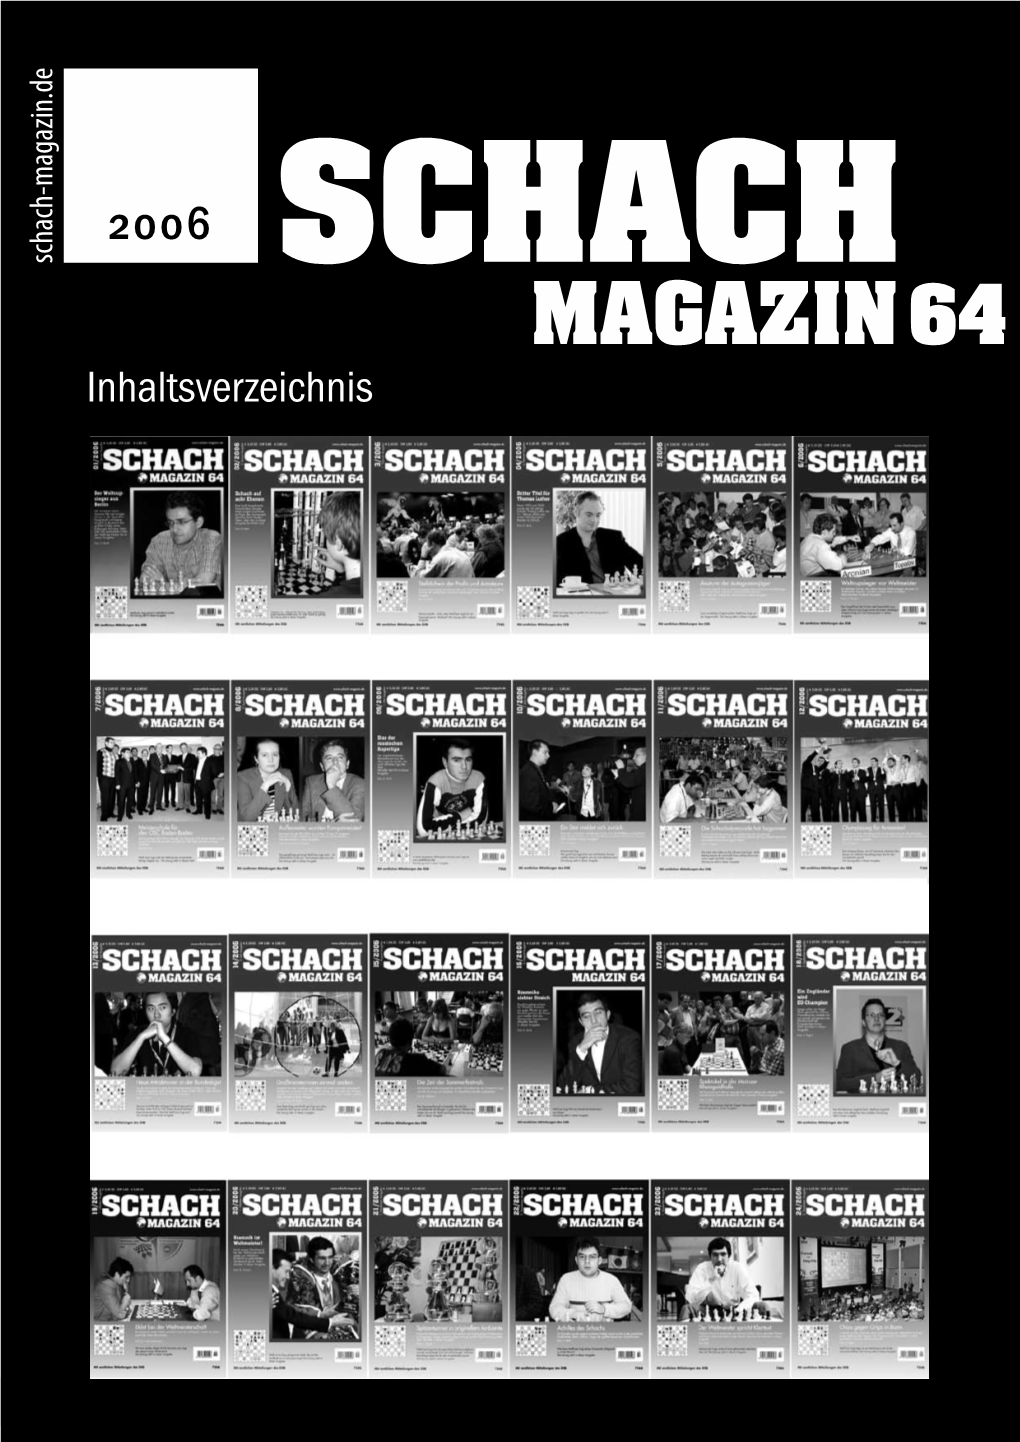 SCHACH MAGAZIN 64 – 2007  Inhaltsverzeichnis 2006 Inhaltsverzeichnis 2006